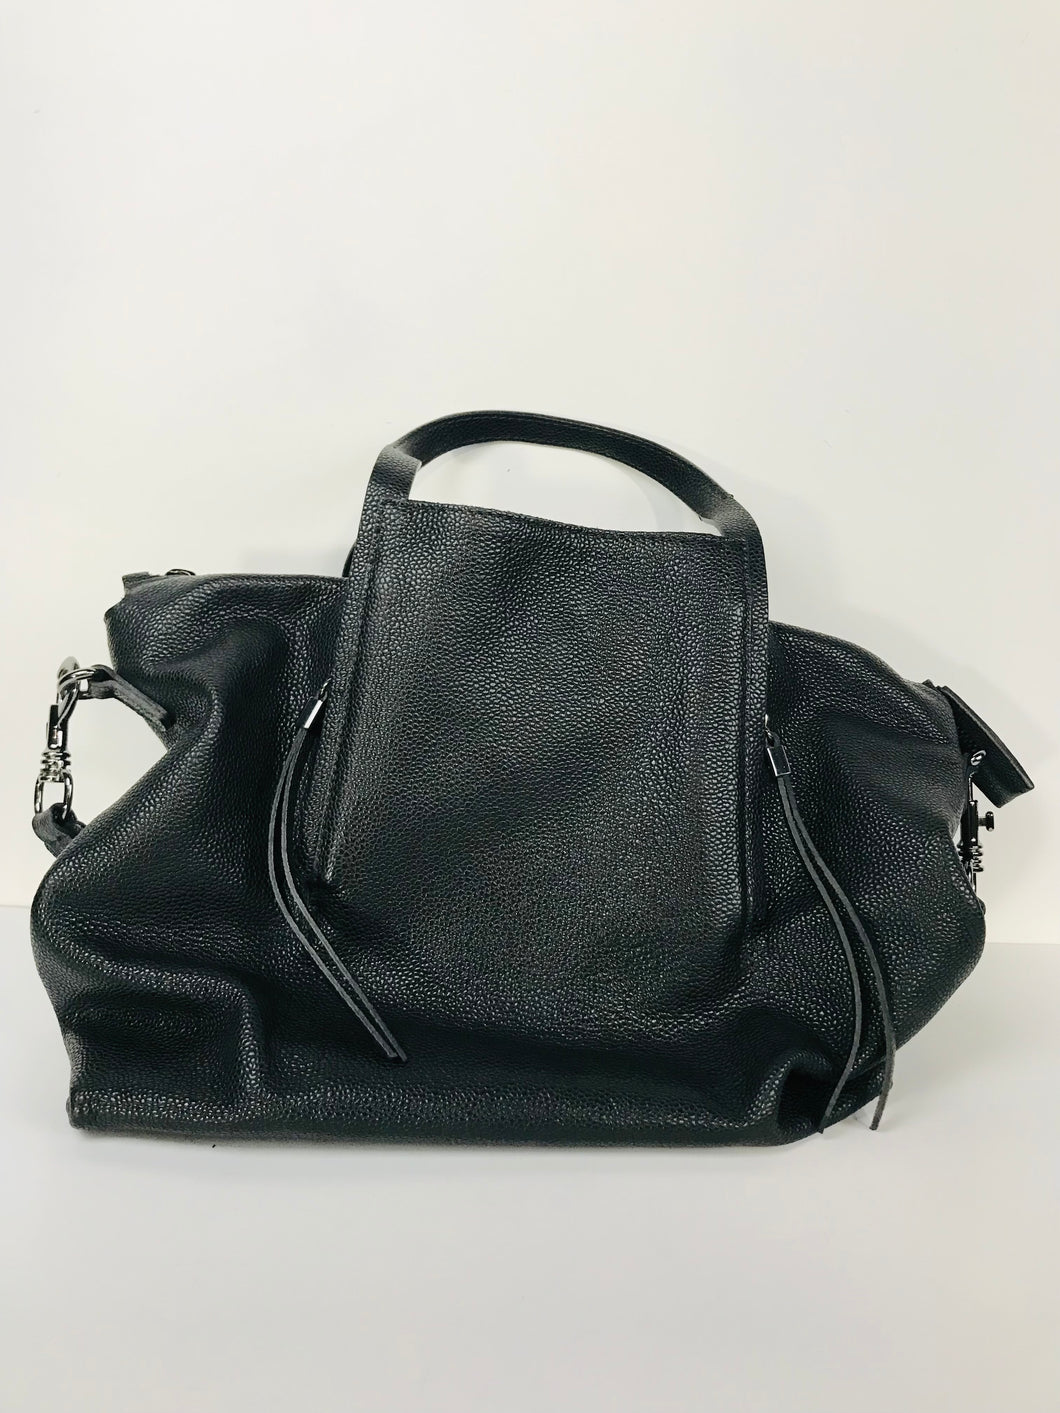 Gianni Chiarini Women's Leather Tote Bag NWT | Black